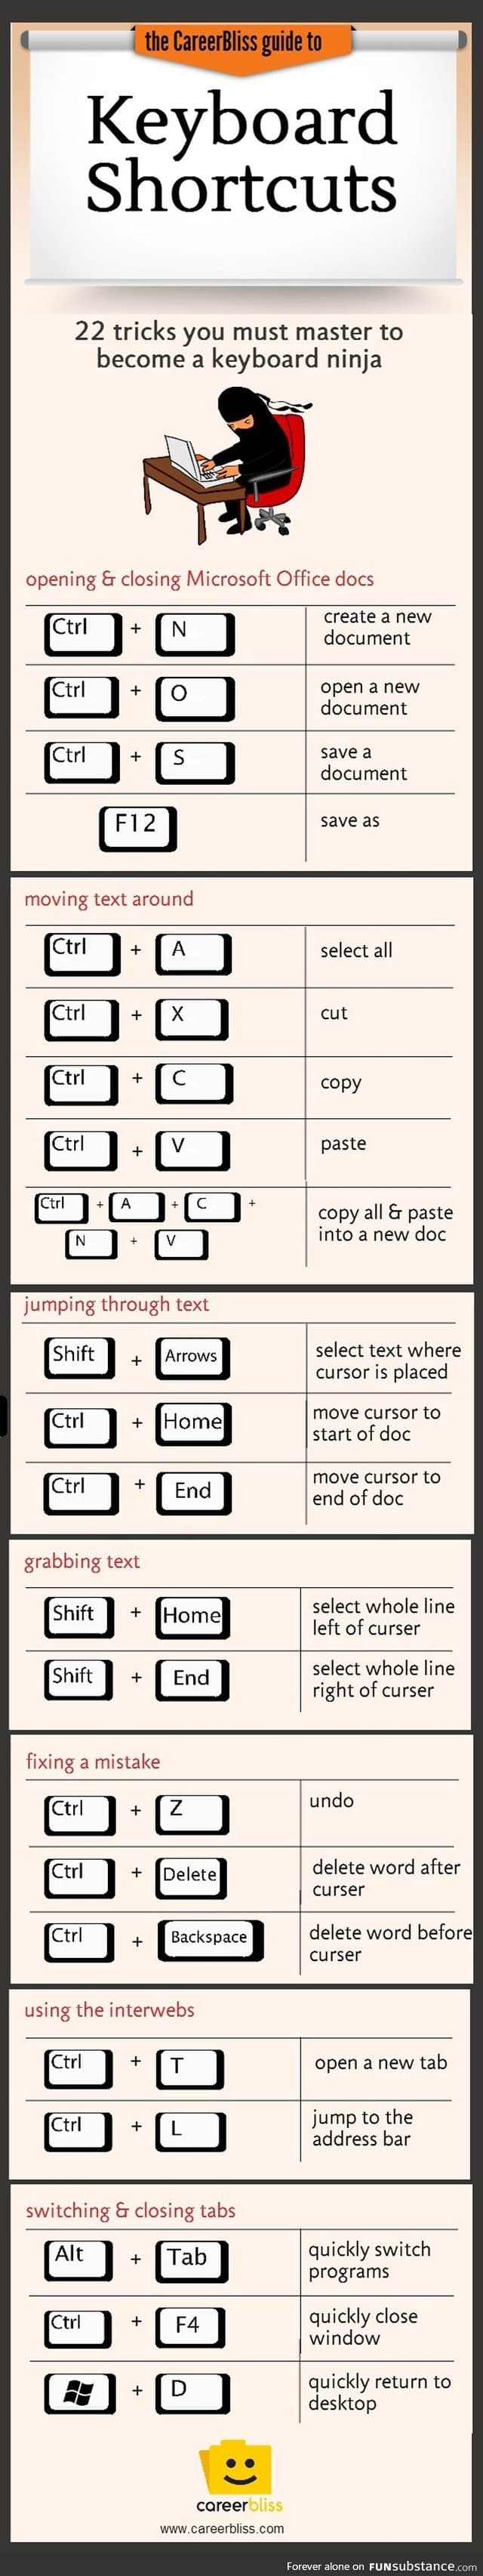 Essential keyboard shortcuts